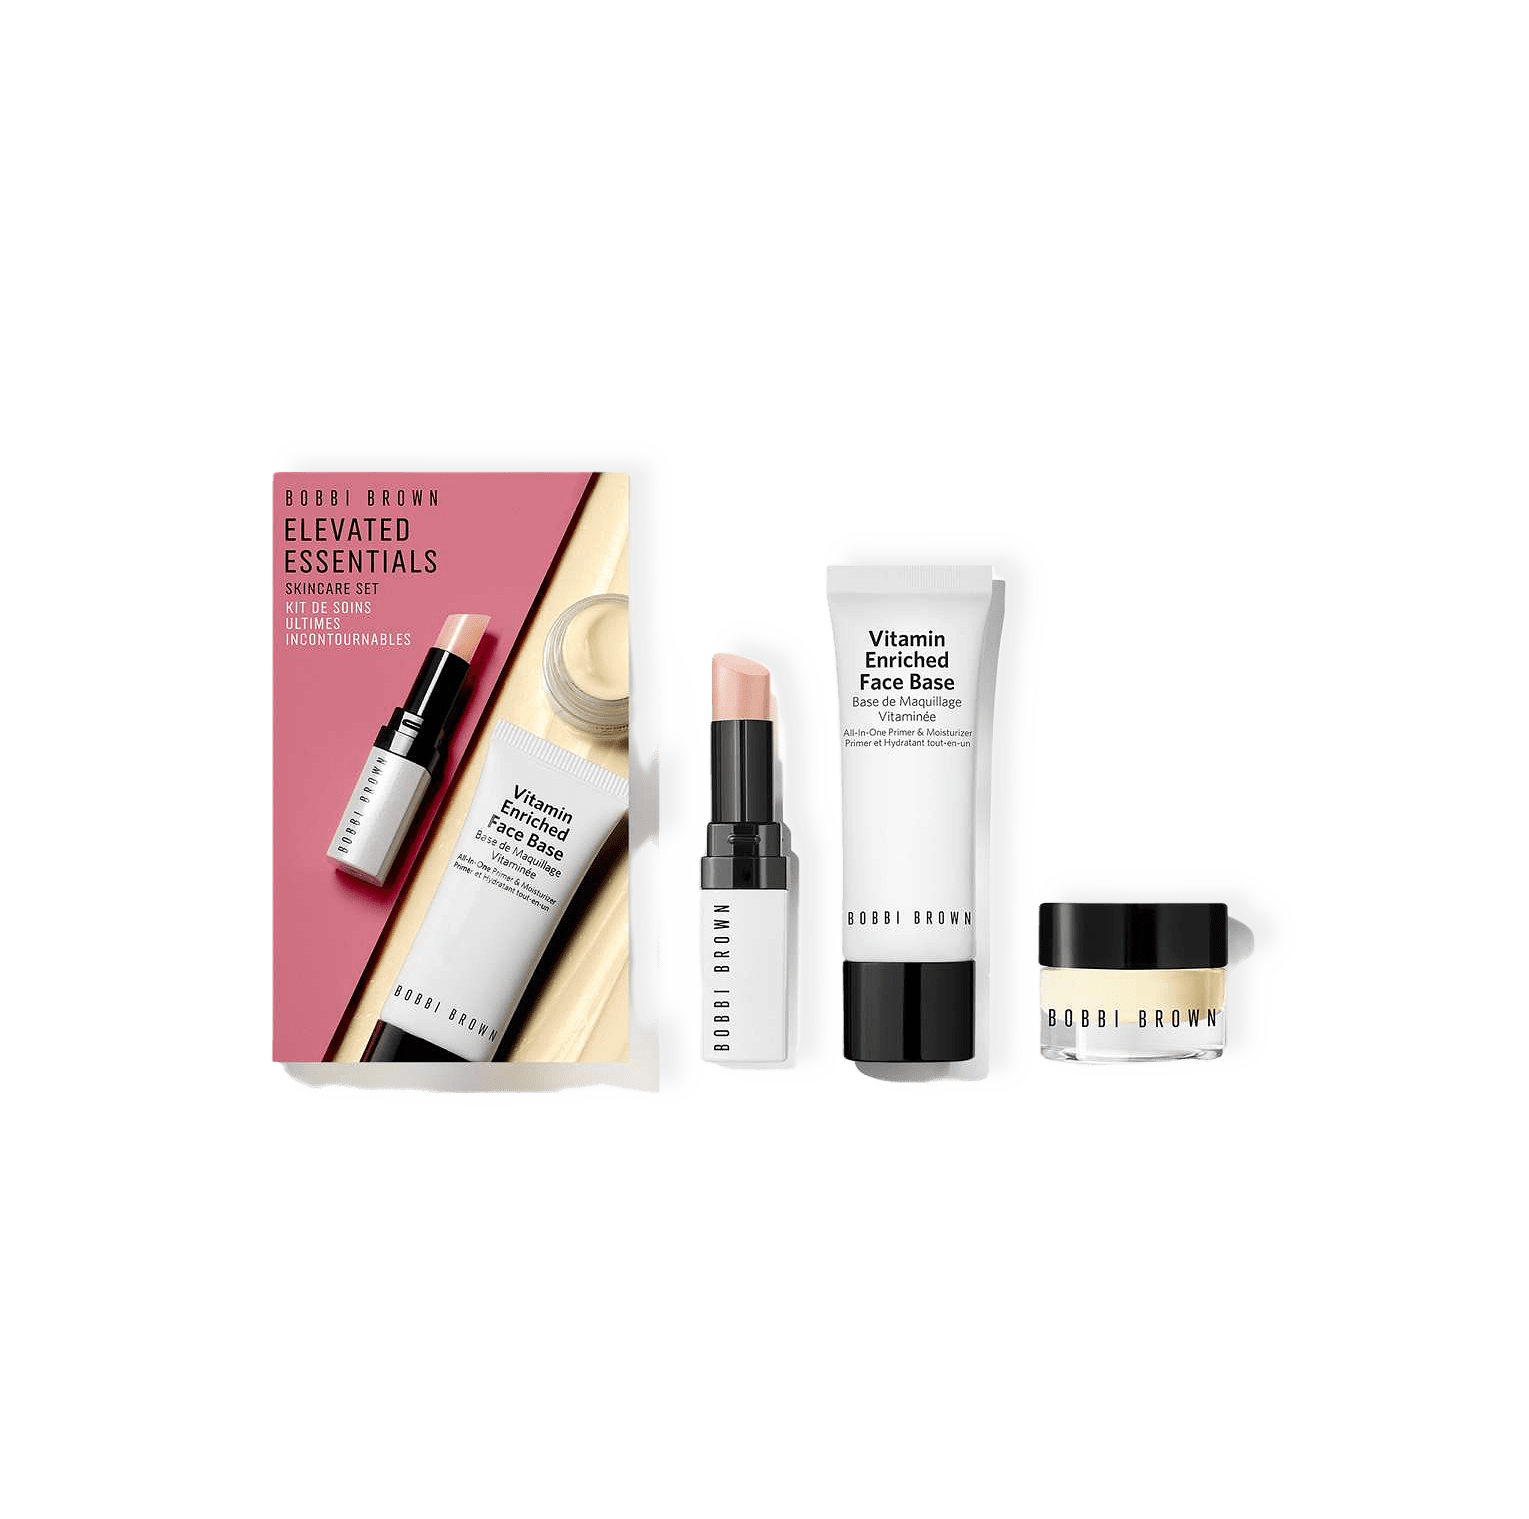 Elevated Essentials Skincare Gift Set